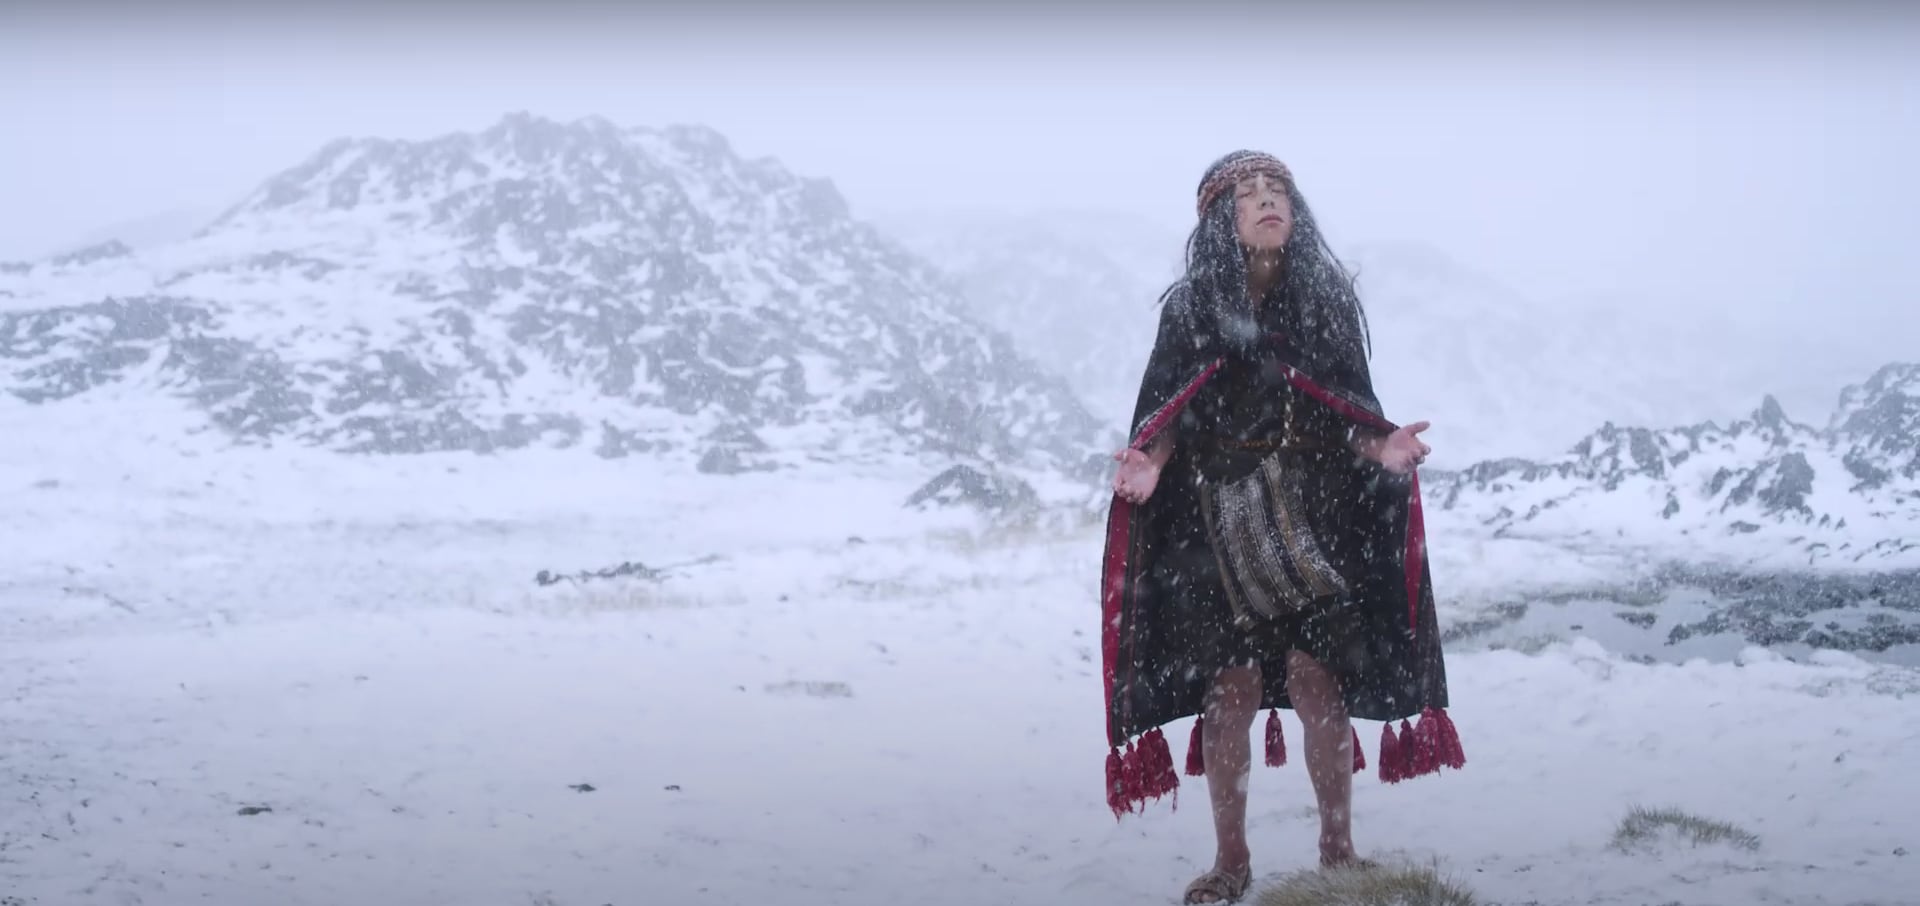 Fotograma del documental "El Guardián de Los Andes", que revela nuevos antecedentes del Niño del Cerro El Plomo.